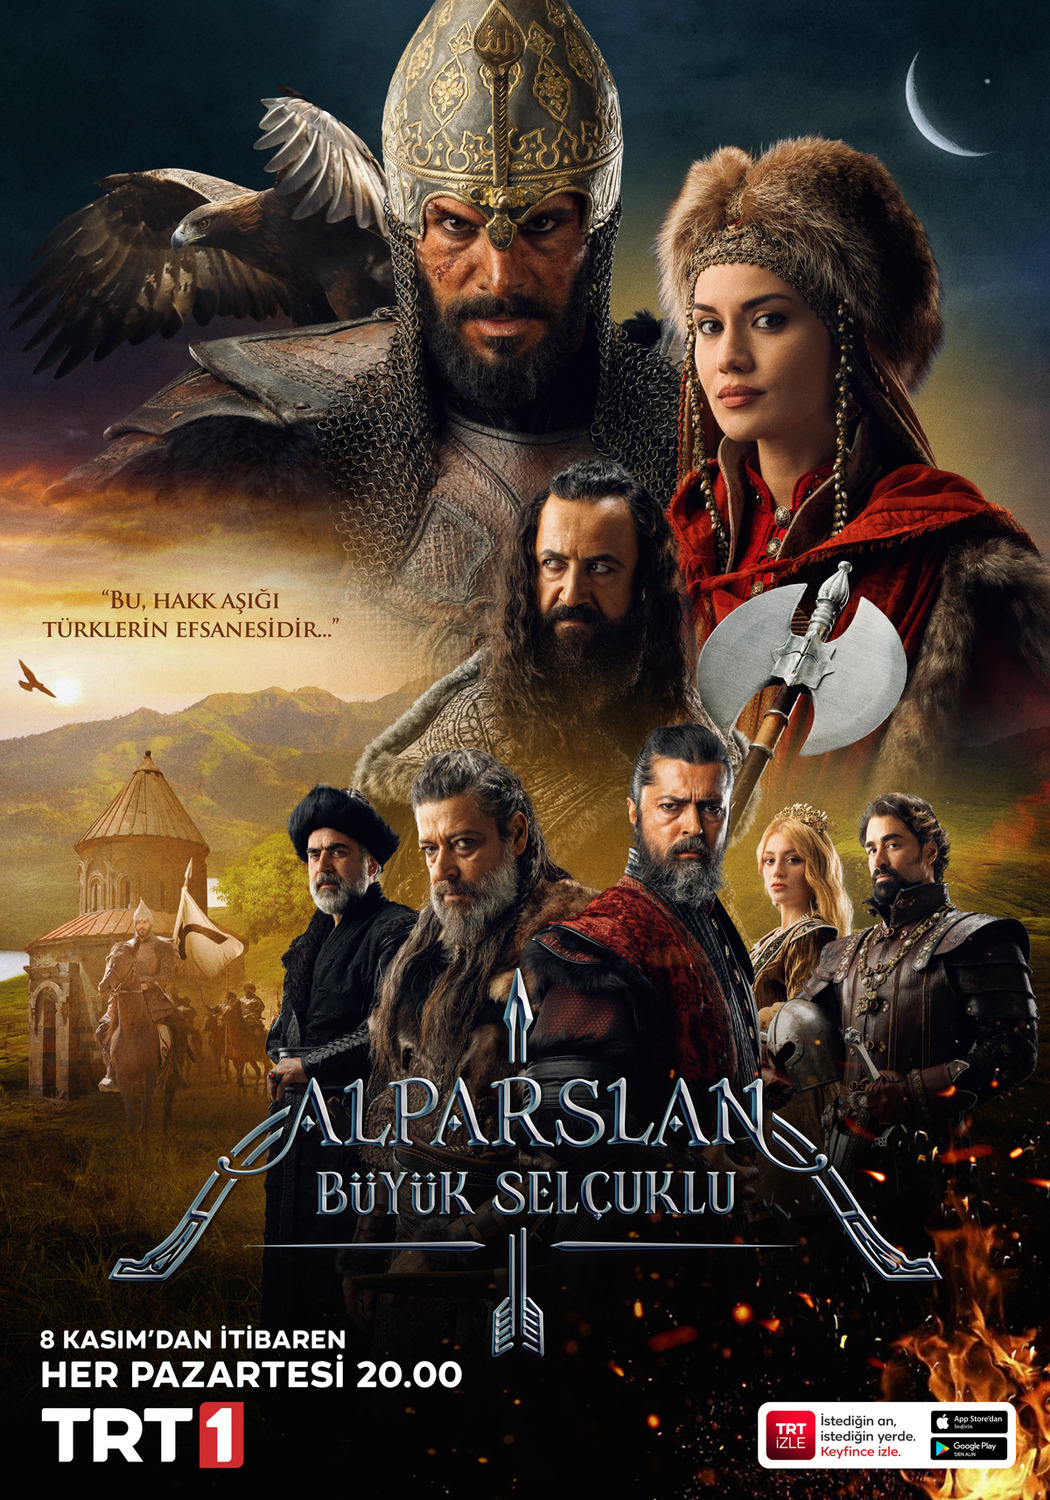 Extra Large TV Poster Image for Alparslan: Büyük Selçuklu (#1 of 2)